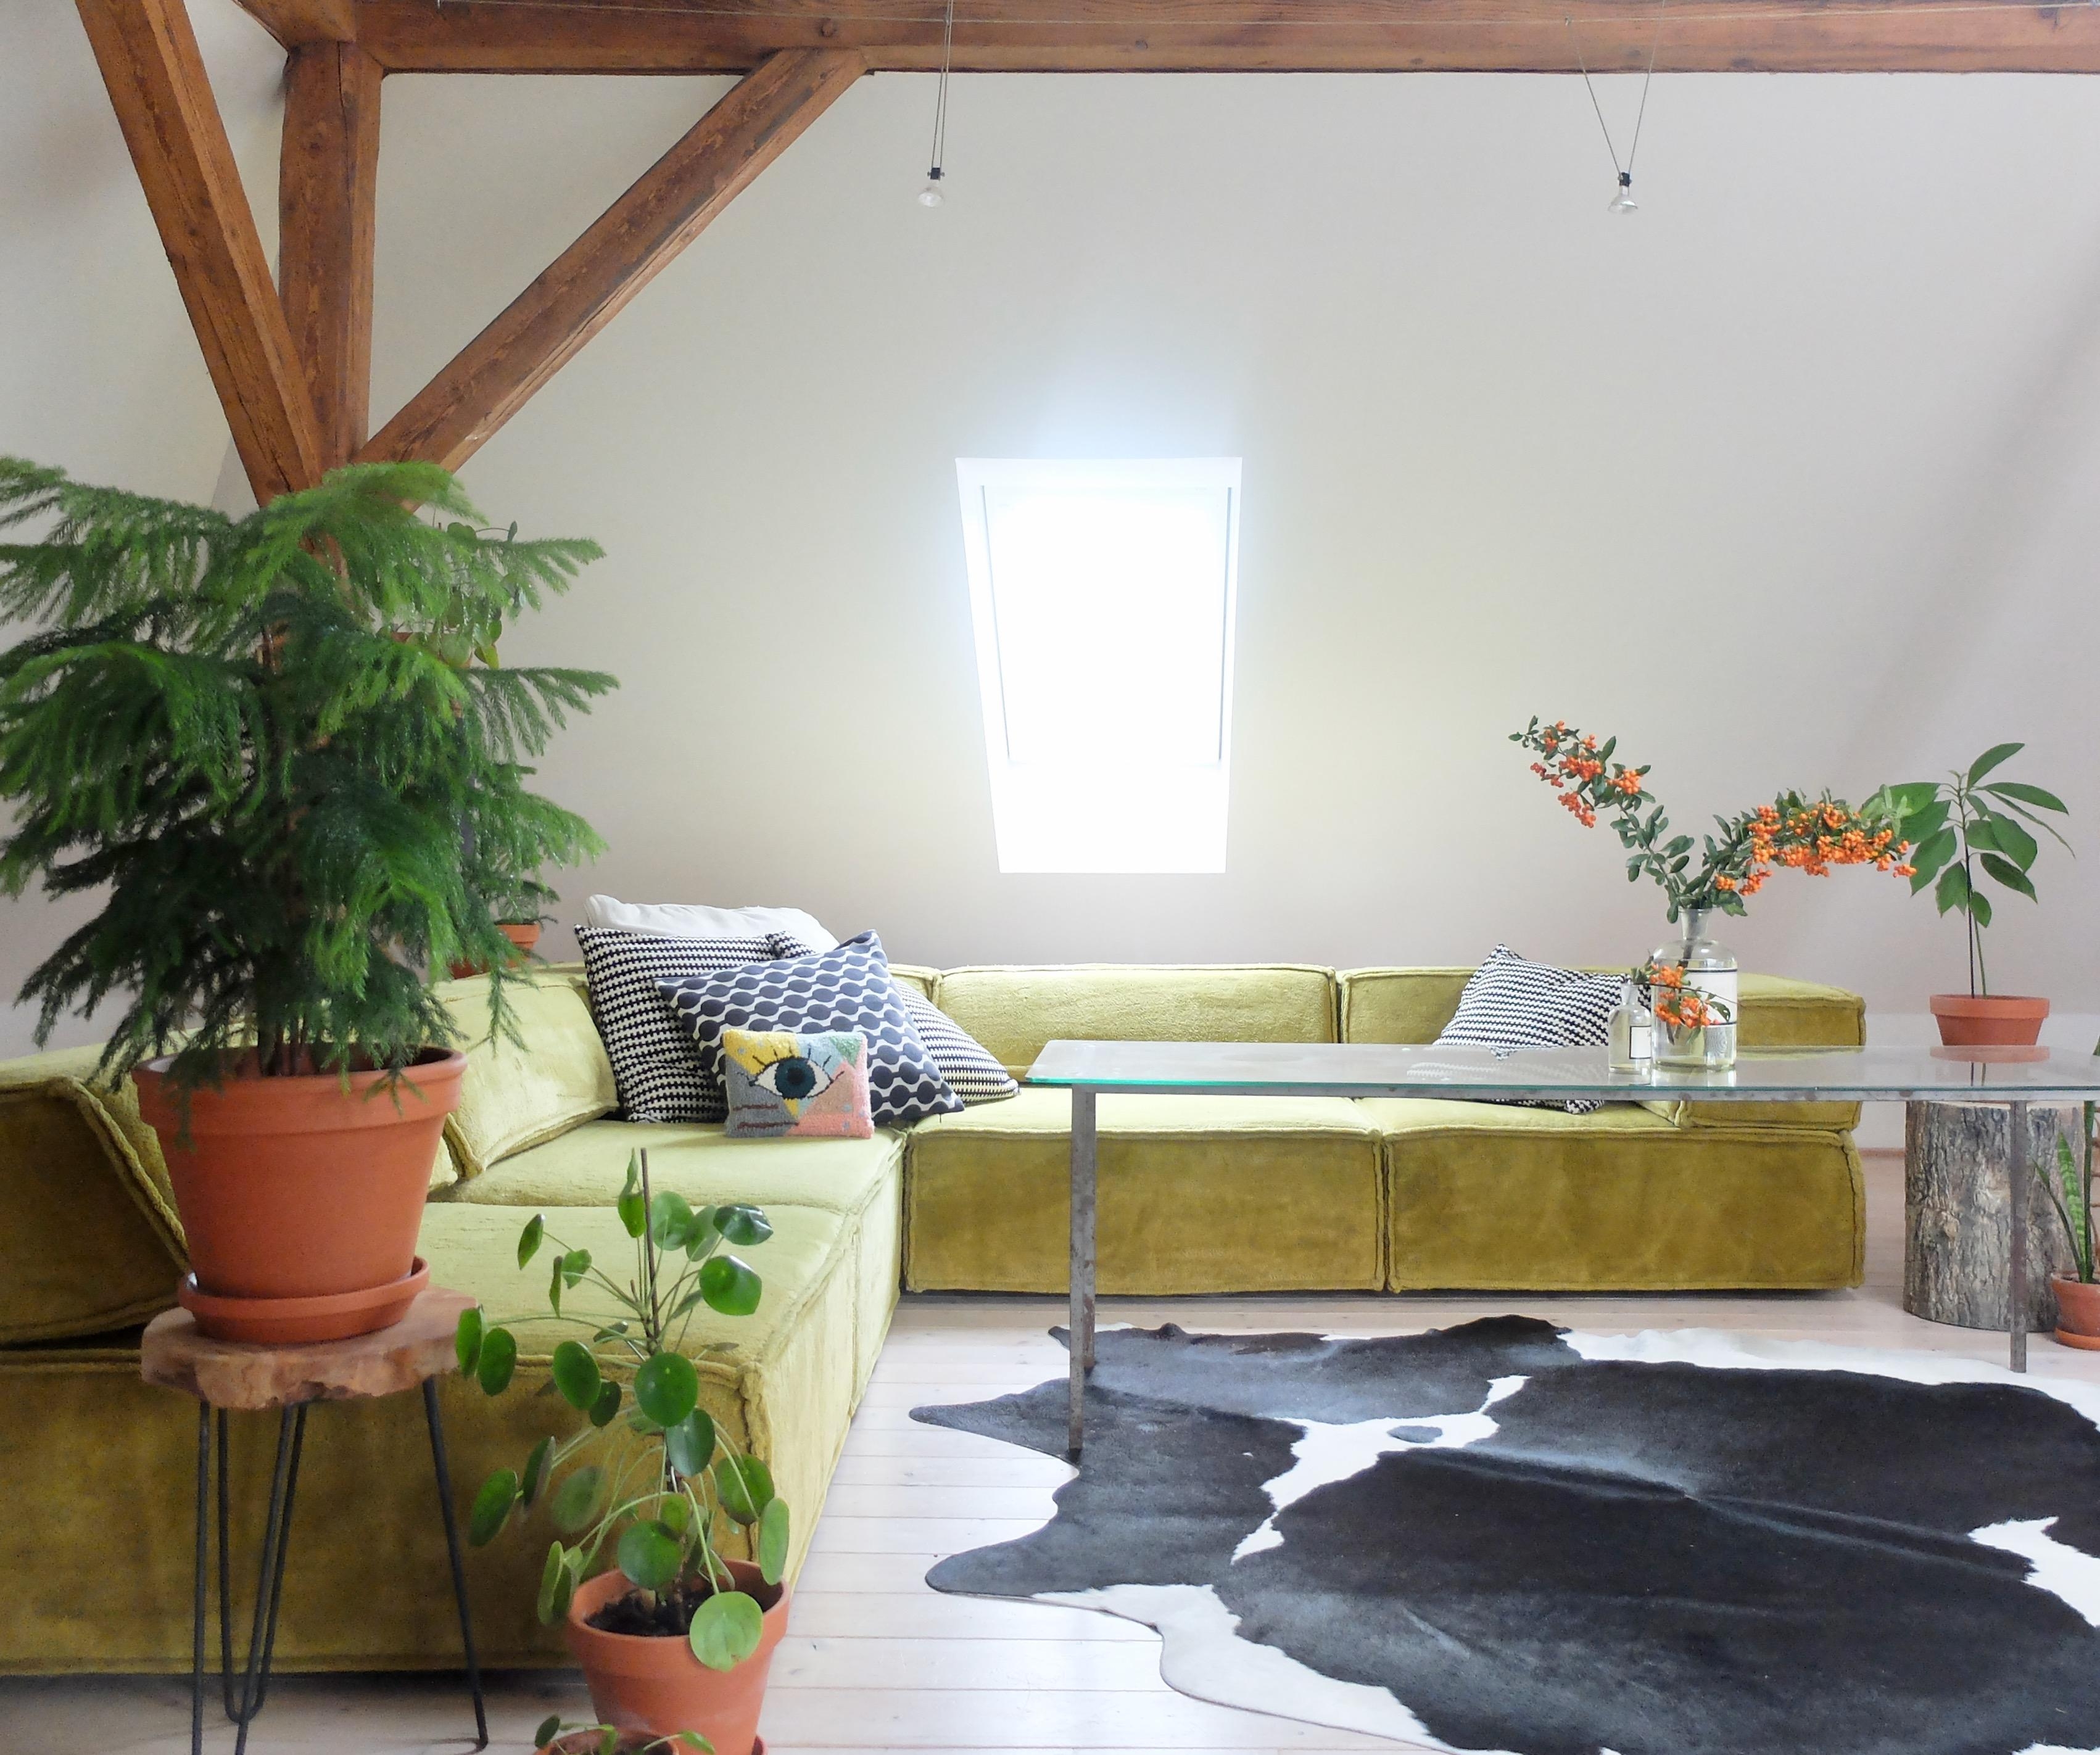 #cor #sofa im grünen #herbstdeko #zweige #wohnzimmer #plants 